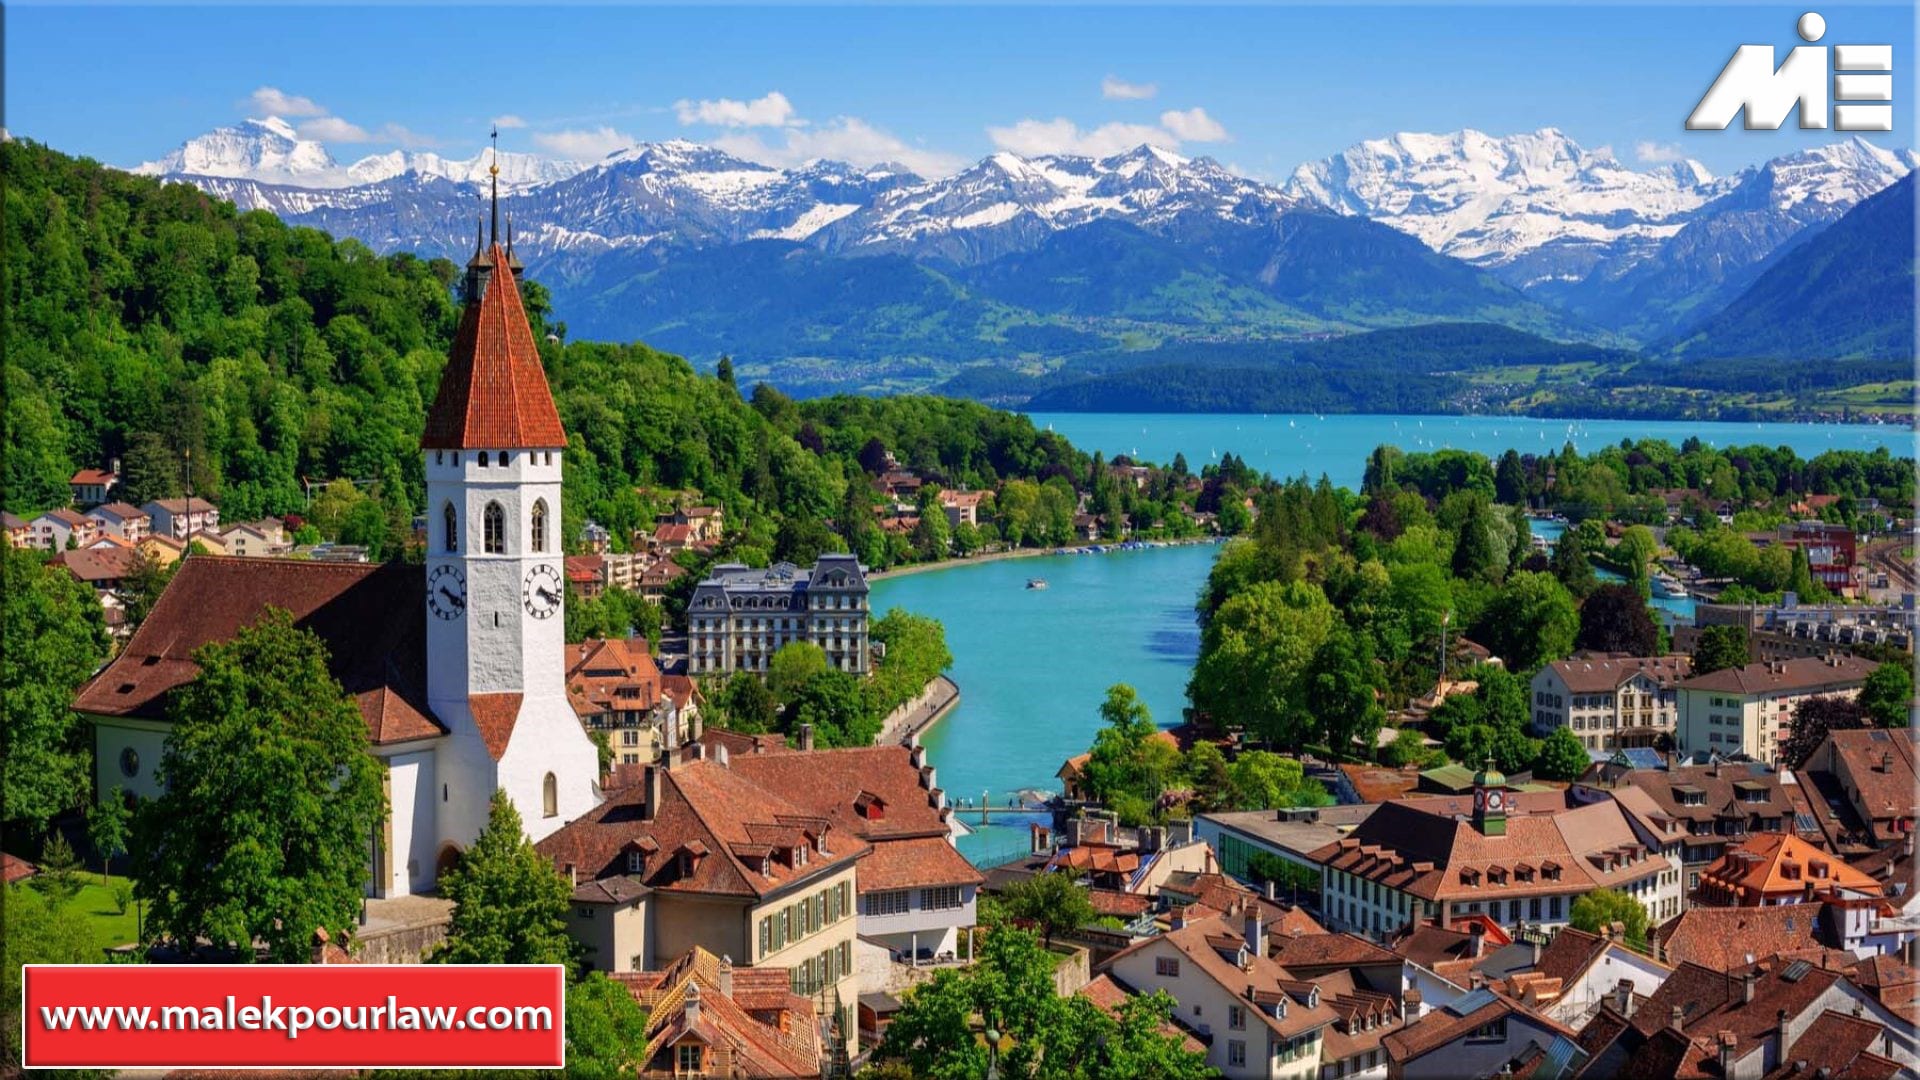 سوئیس زیبا - زیبایی های سوئیس - نقاط گردشگری سوئیس - شهرهای سوئیس - هزینه زندگی در سوئیس